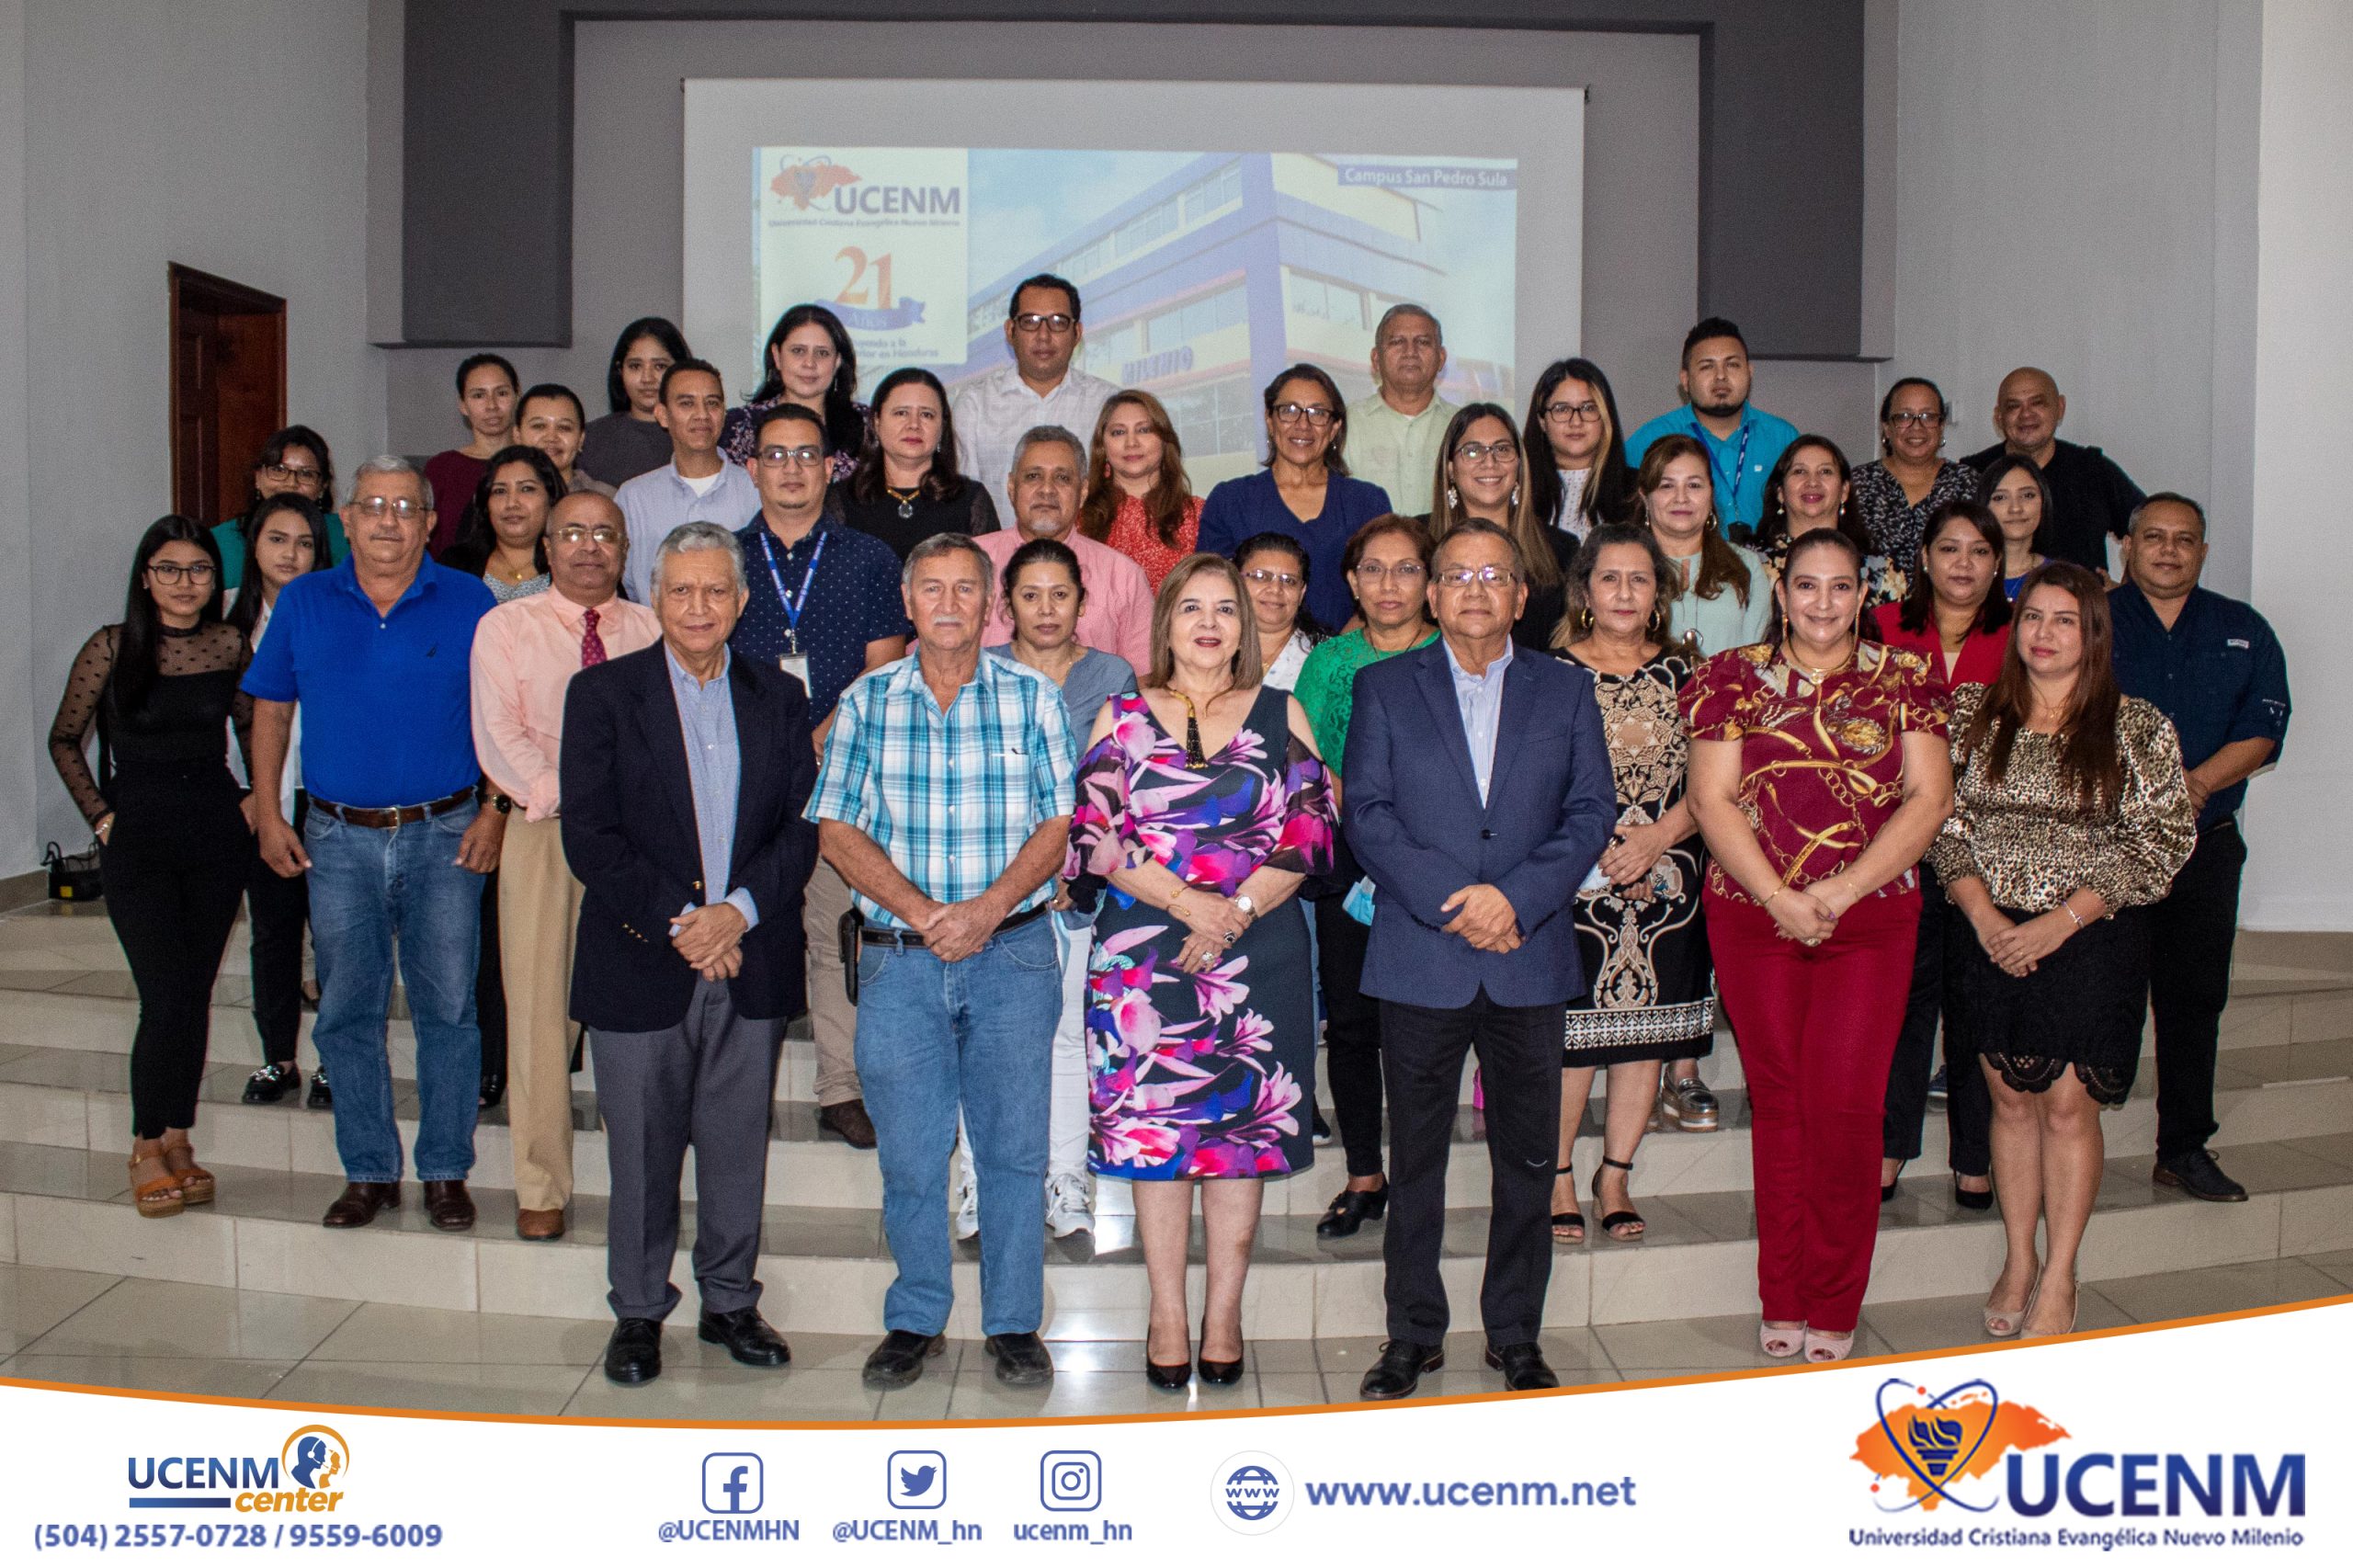 UCENM celebra su 21 aniversario contribuyendo a la educación superior en Honduras